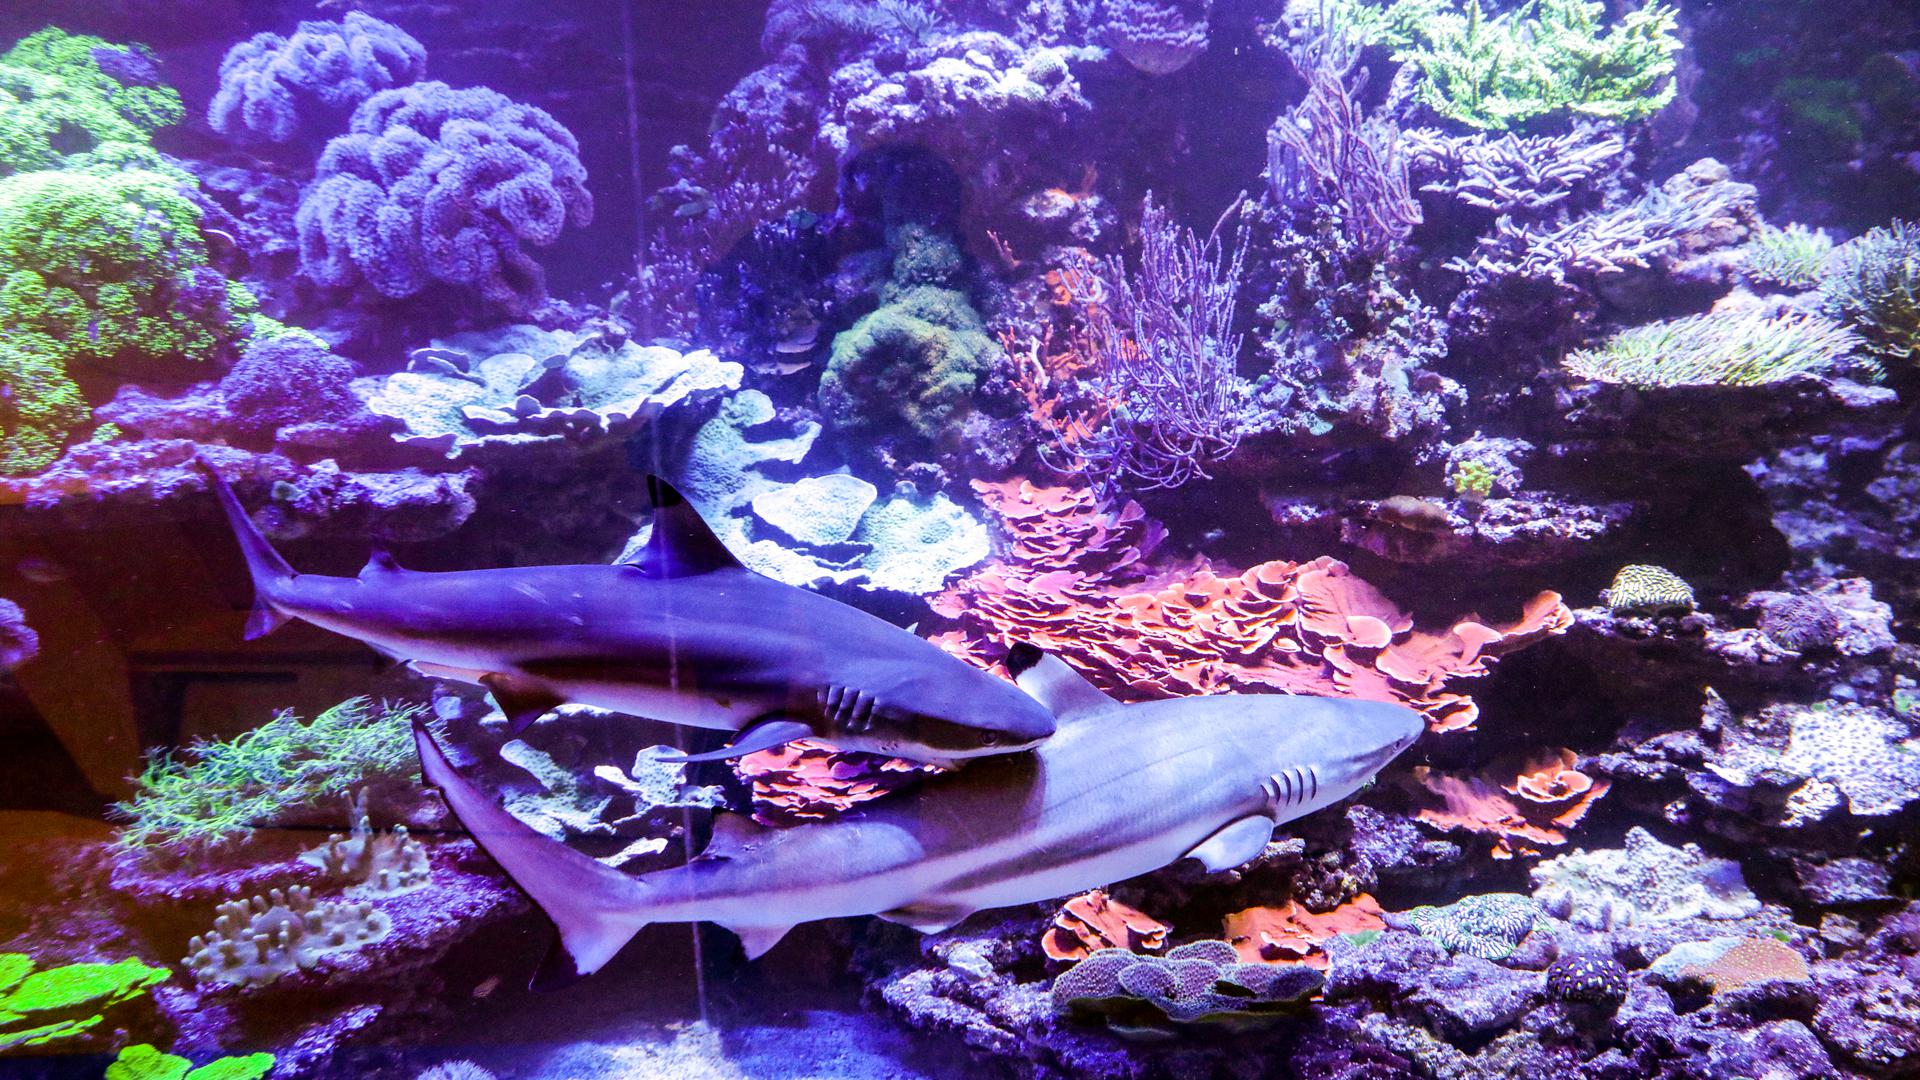 Am 17. Januar 2019 schwimmt Schwarzspitzenriffhai Kalli mit der frisch eingetroffenen, etwas größeren Artgenossin Karla um das lebende Korallenriff im Naturkundemuseum Karlsruhe.